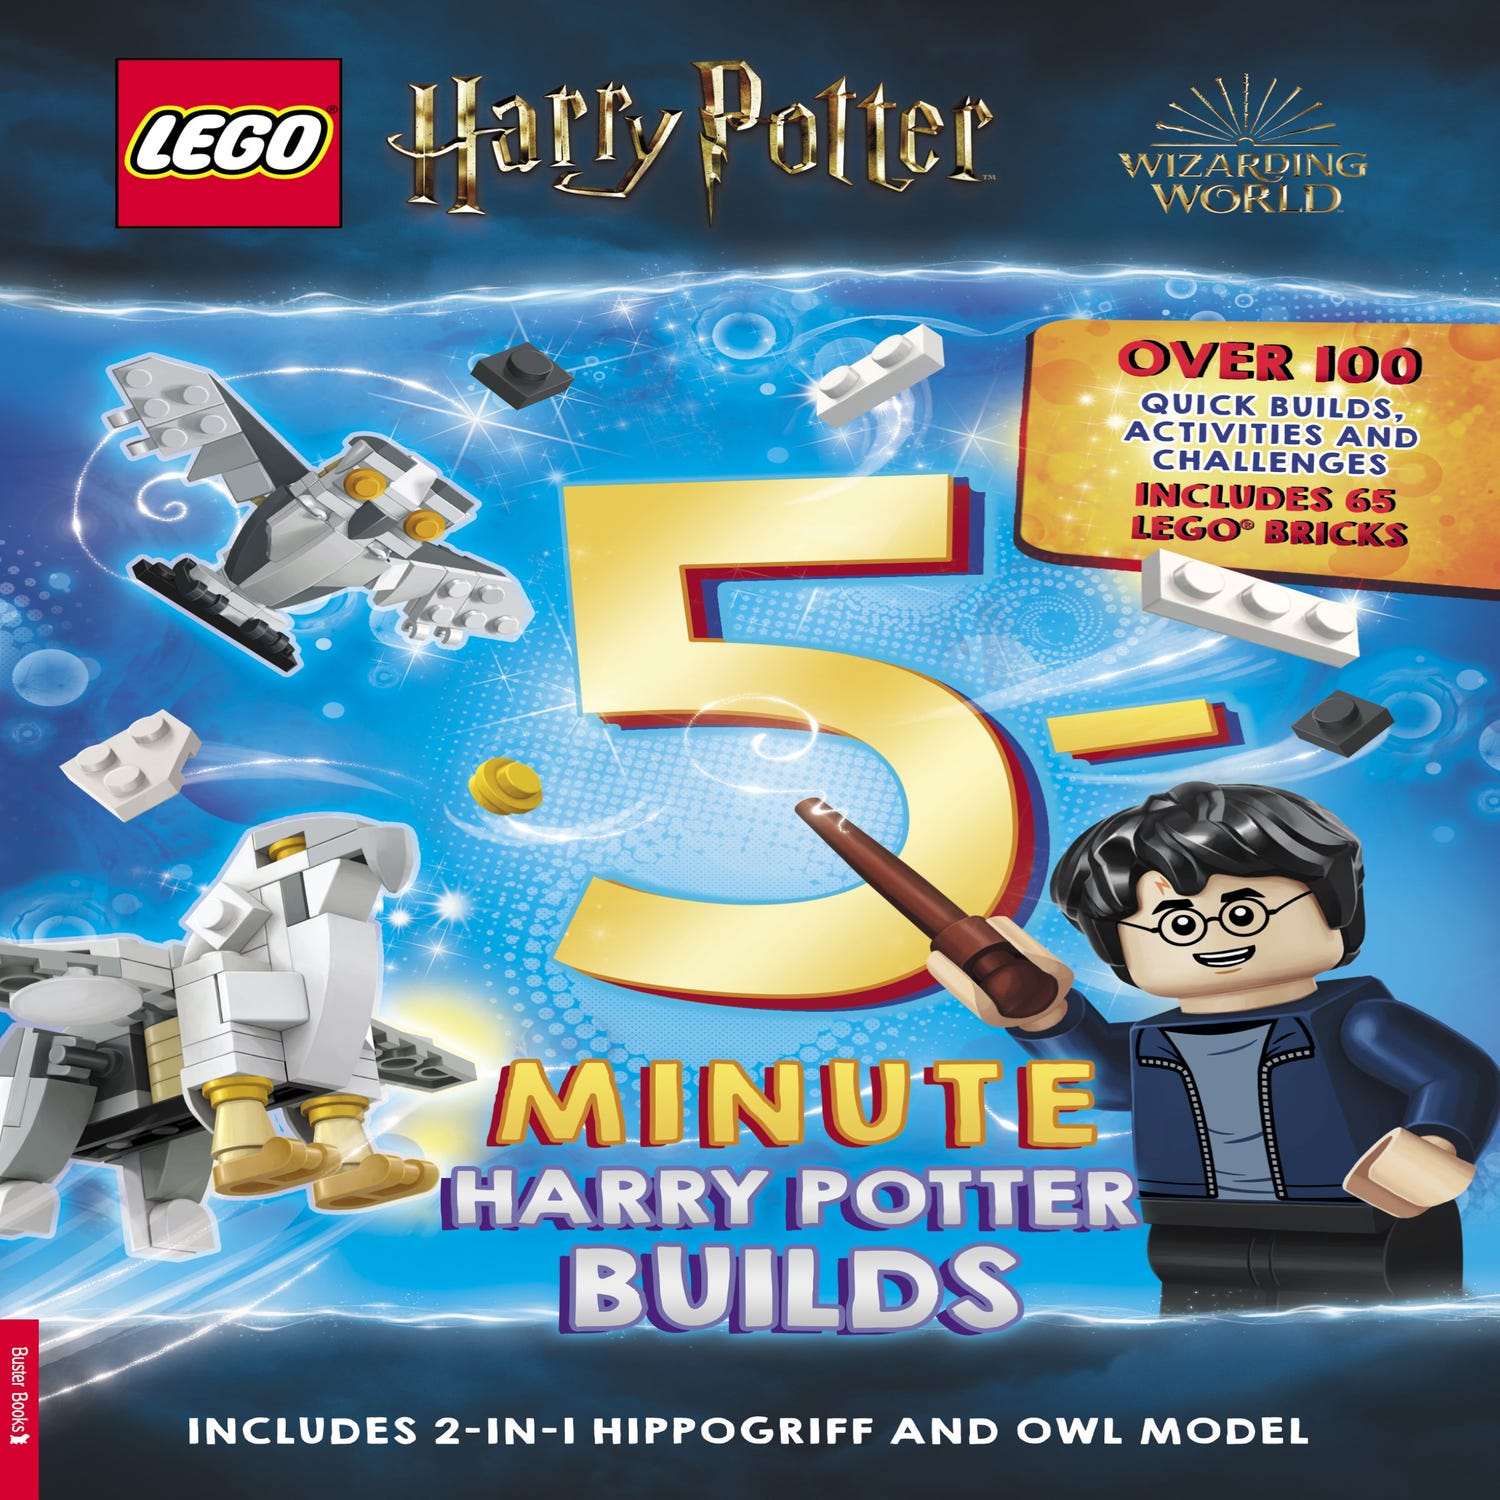 Livro Lego Harry Potter: Construções em 5 Minutos - Shopping do